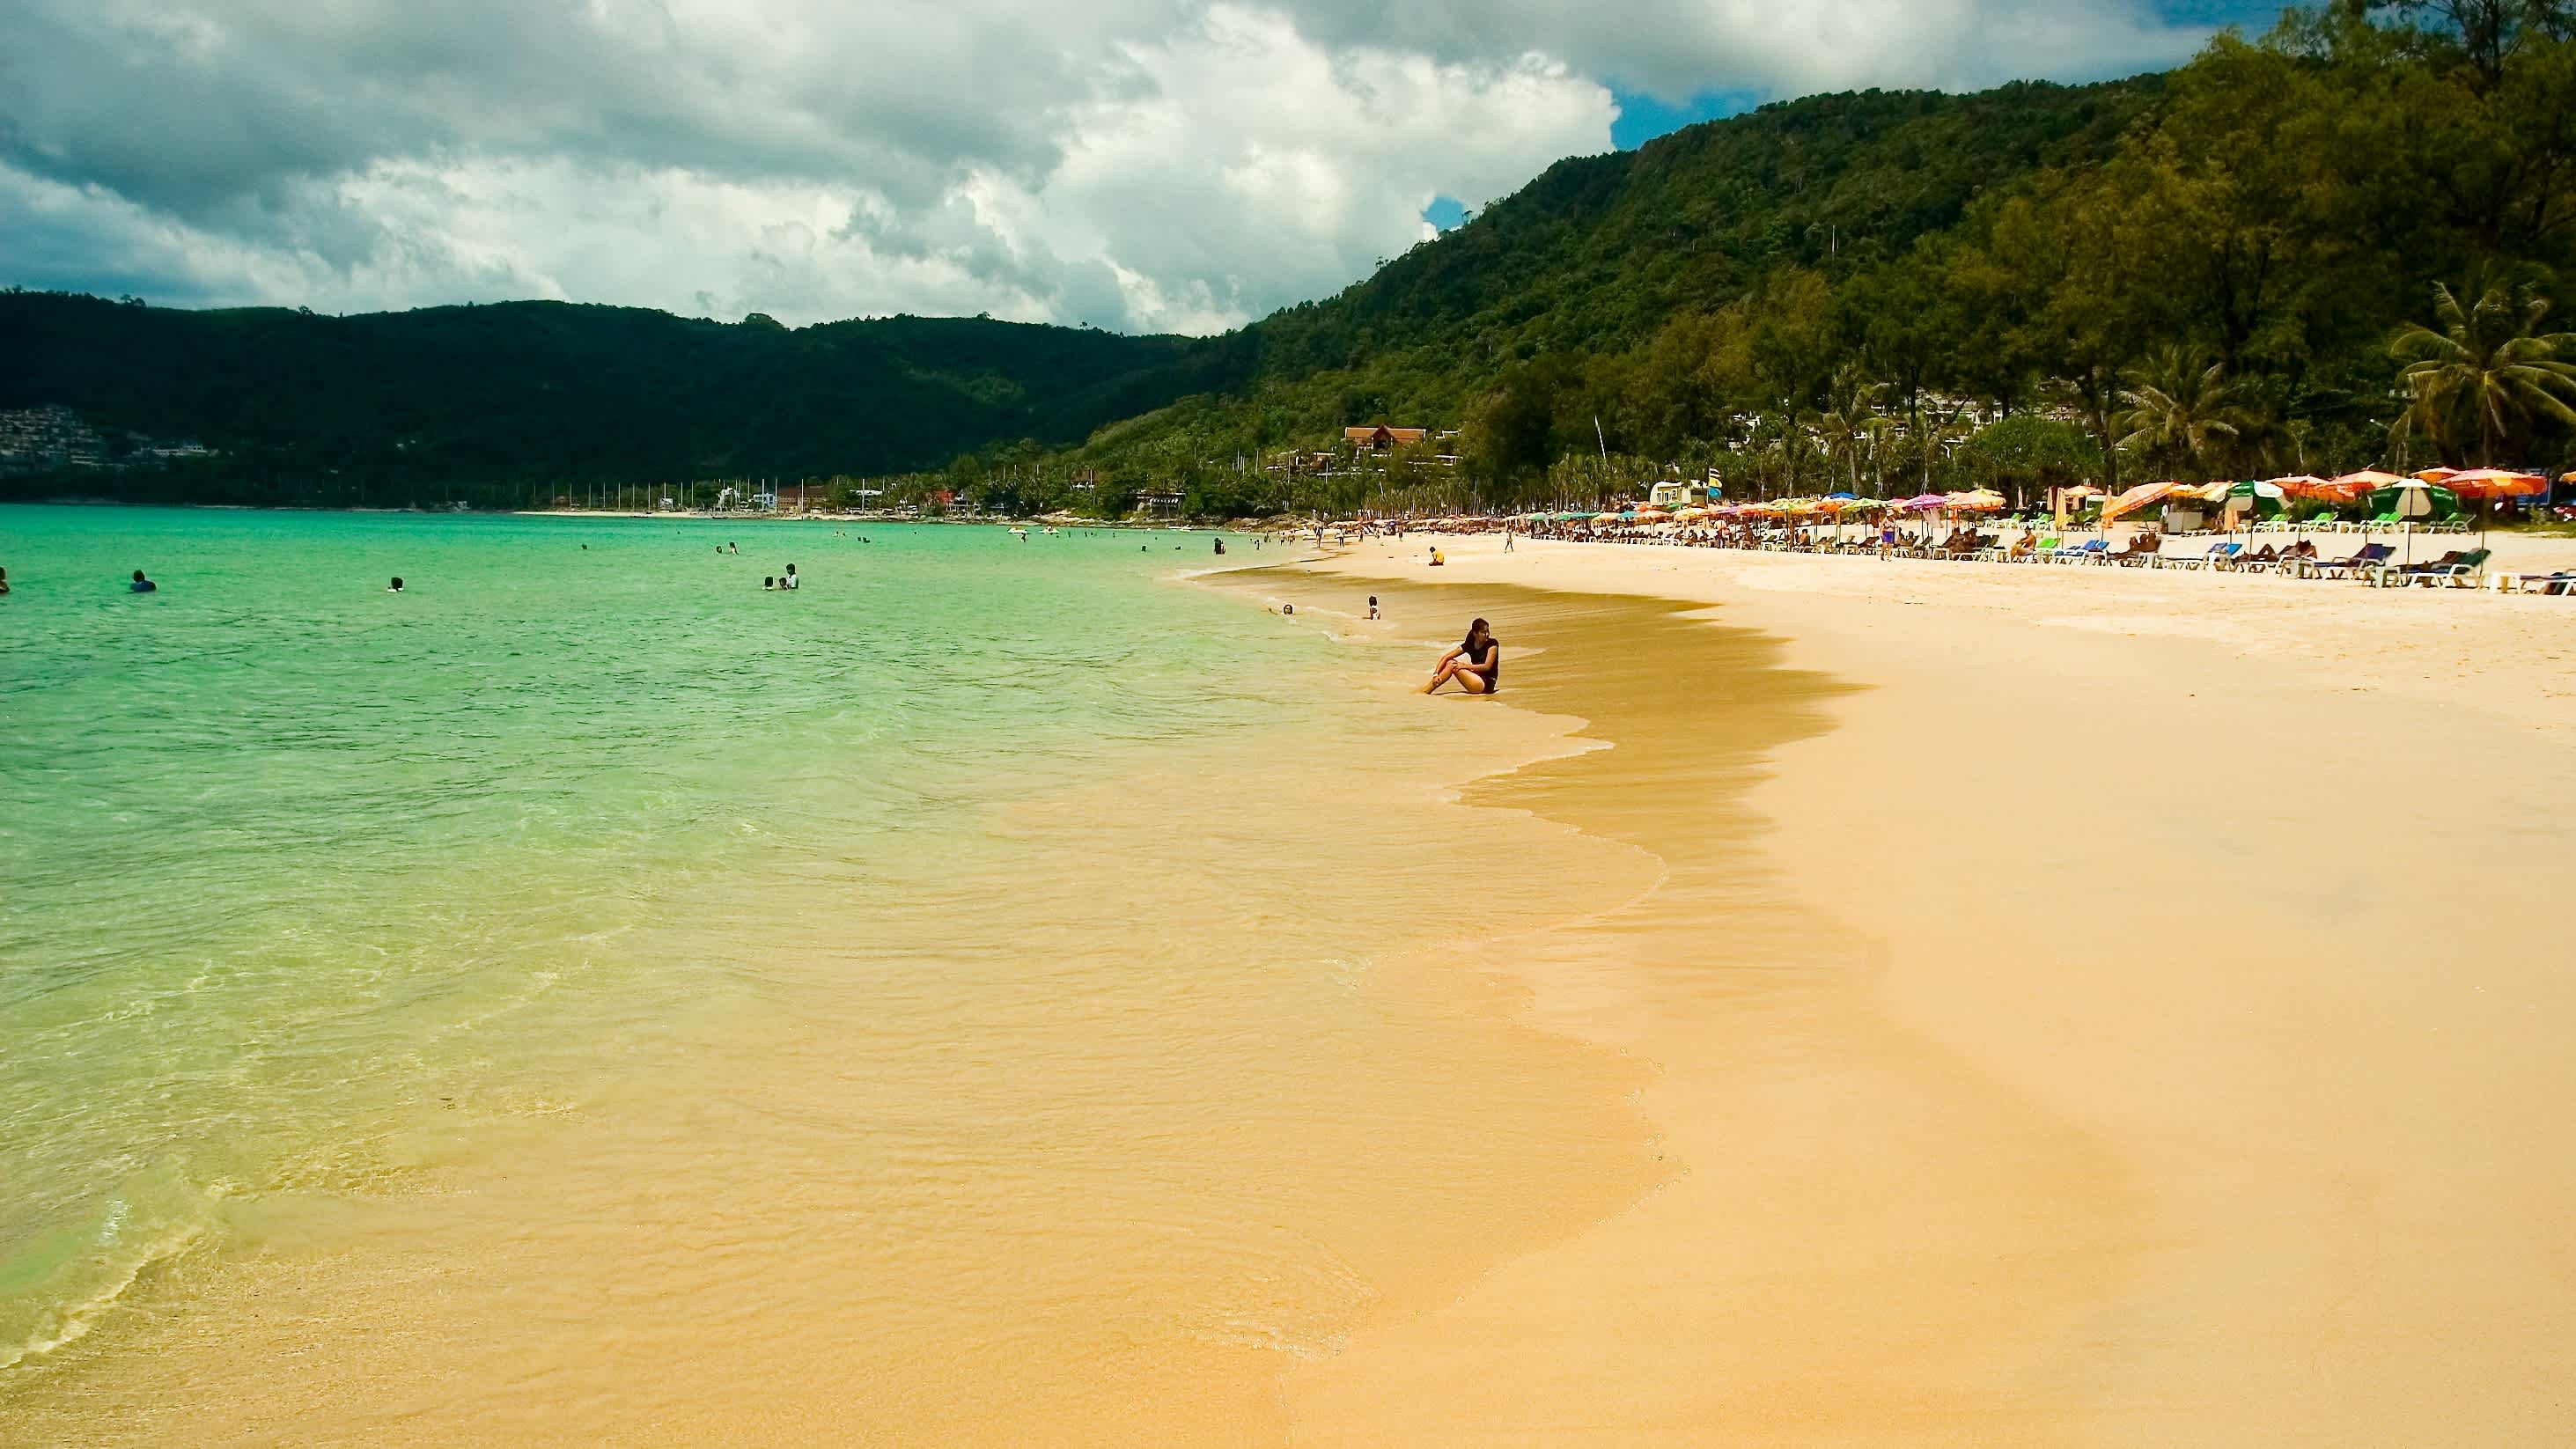 La plage de Patong avec son sable doré, sa mer turquoise peu profonde et ses parasols colorés en arrière-plan, à Phuket, en Thaïlande.